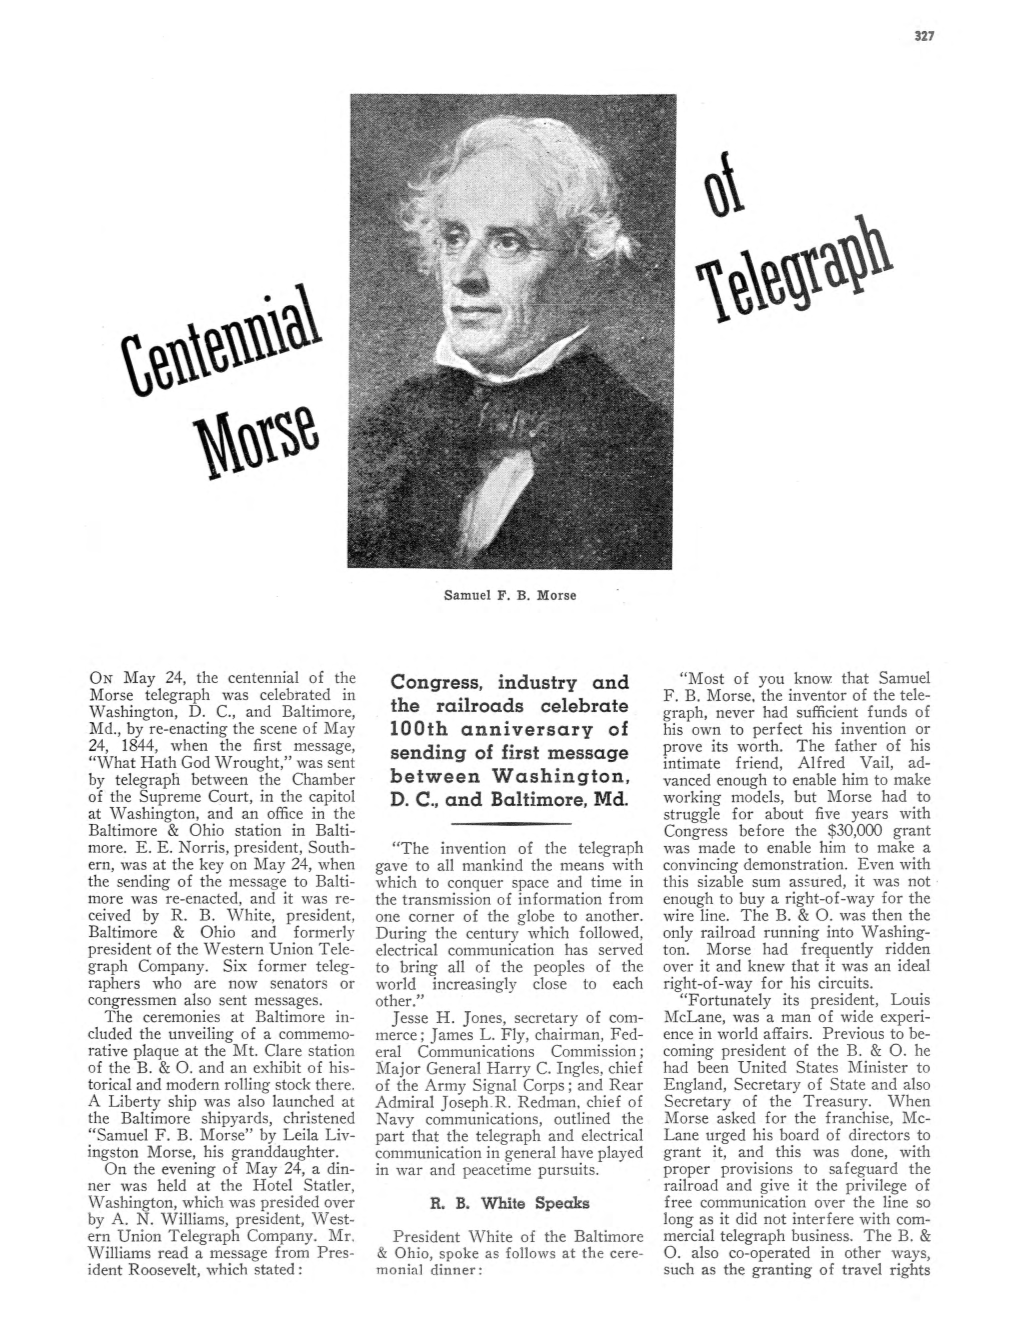 Centennial of Morse Telegraph